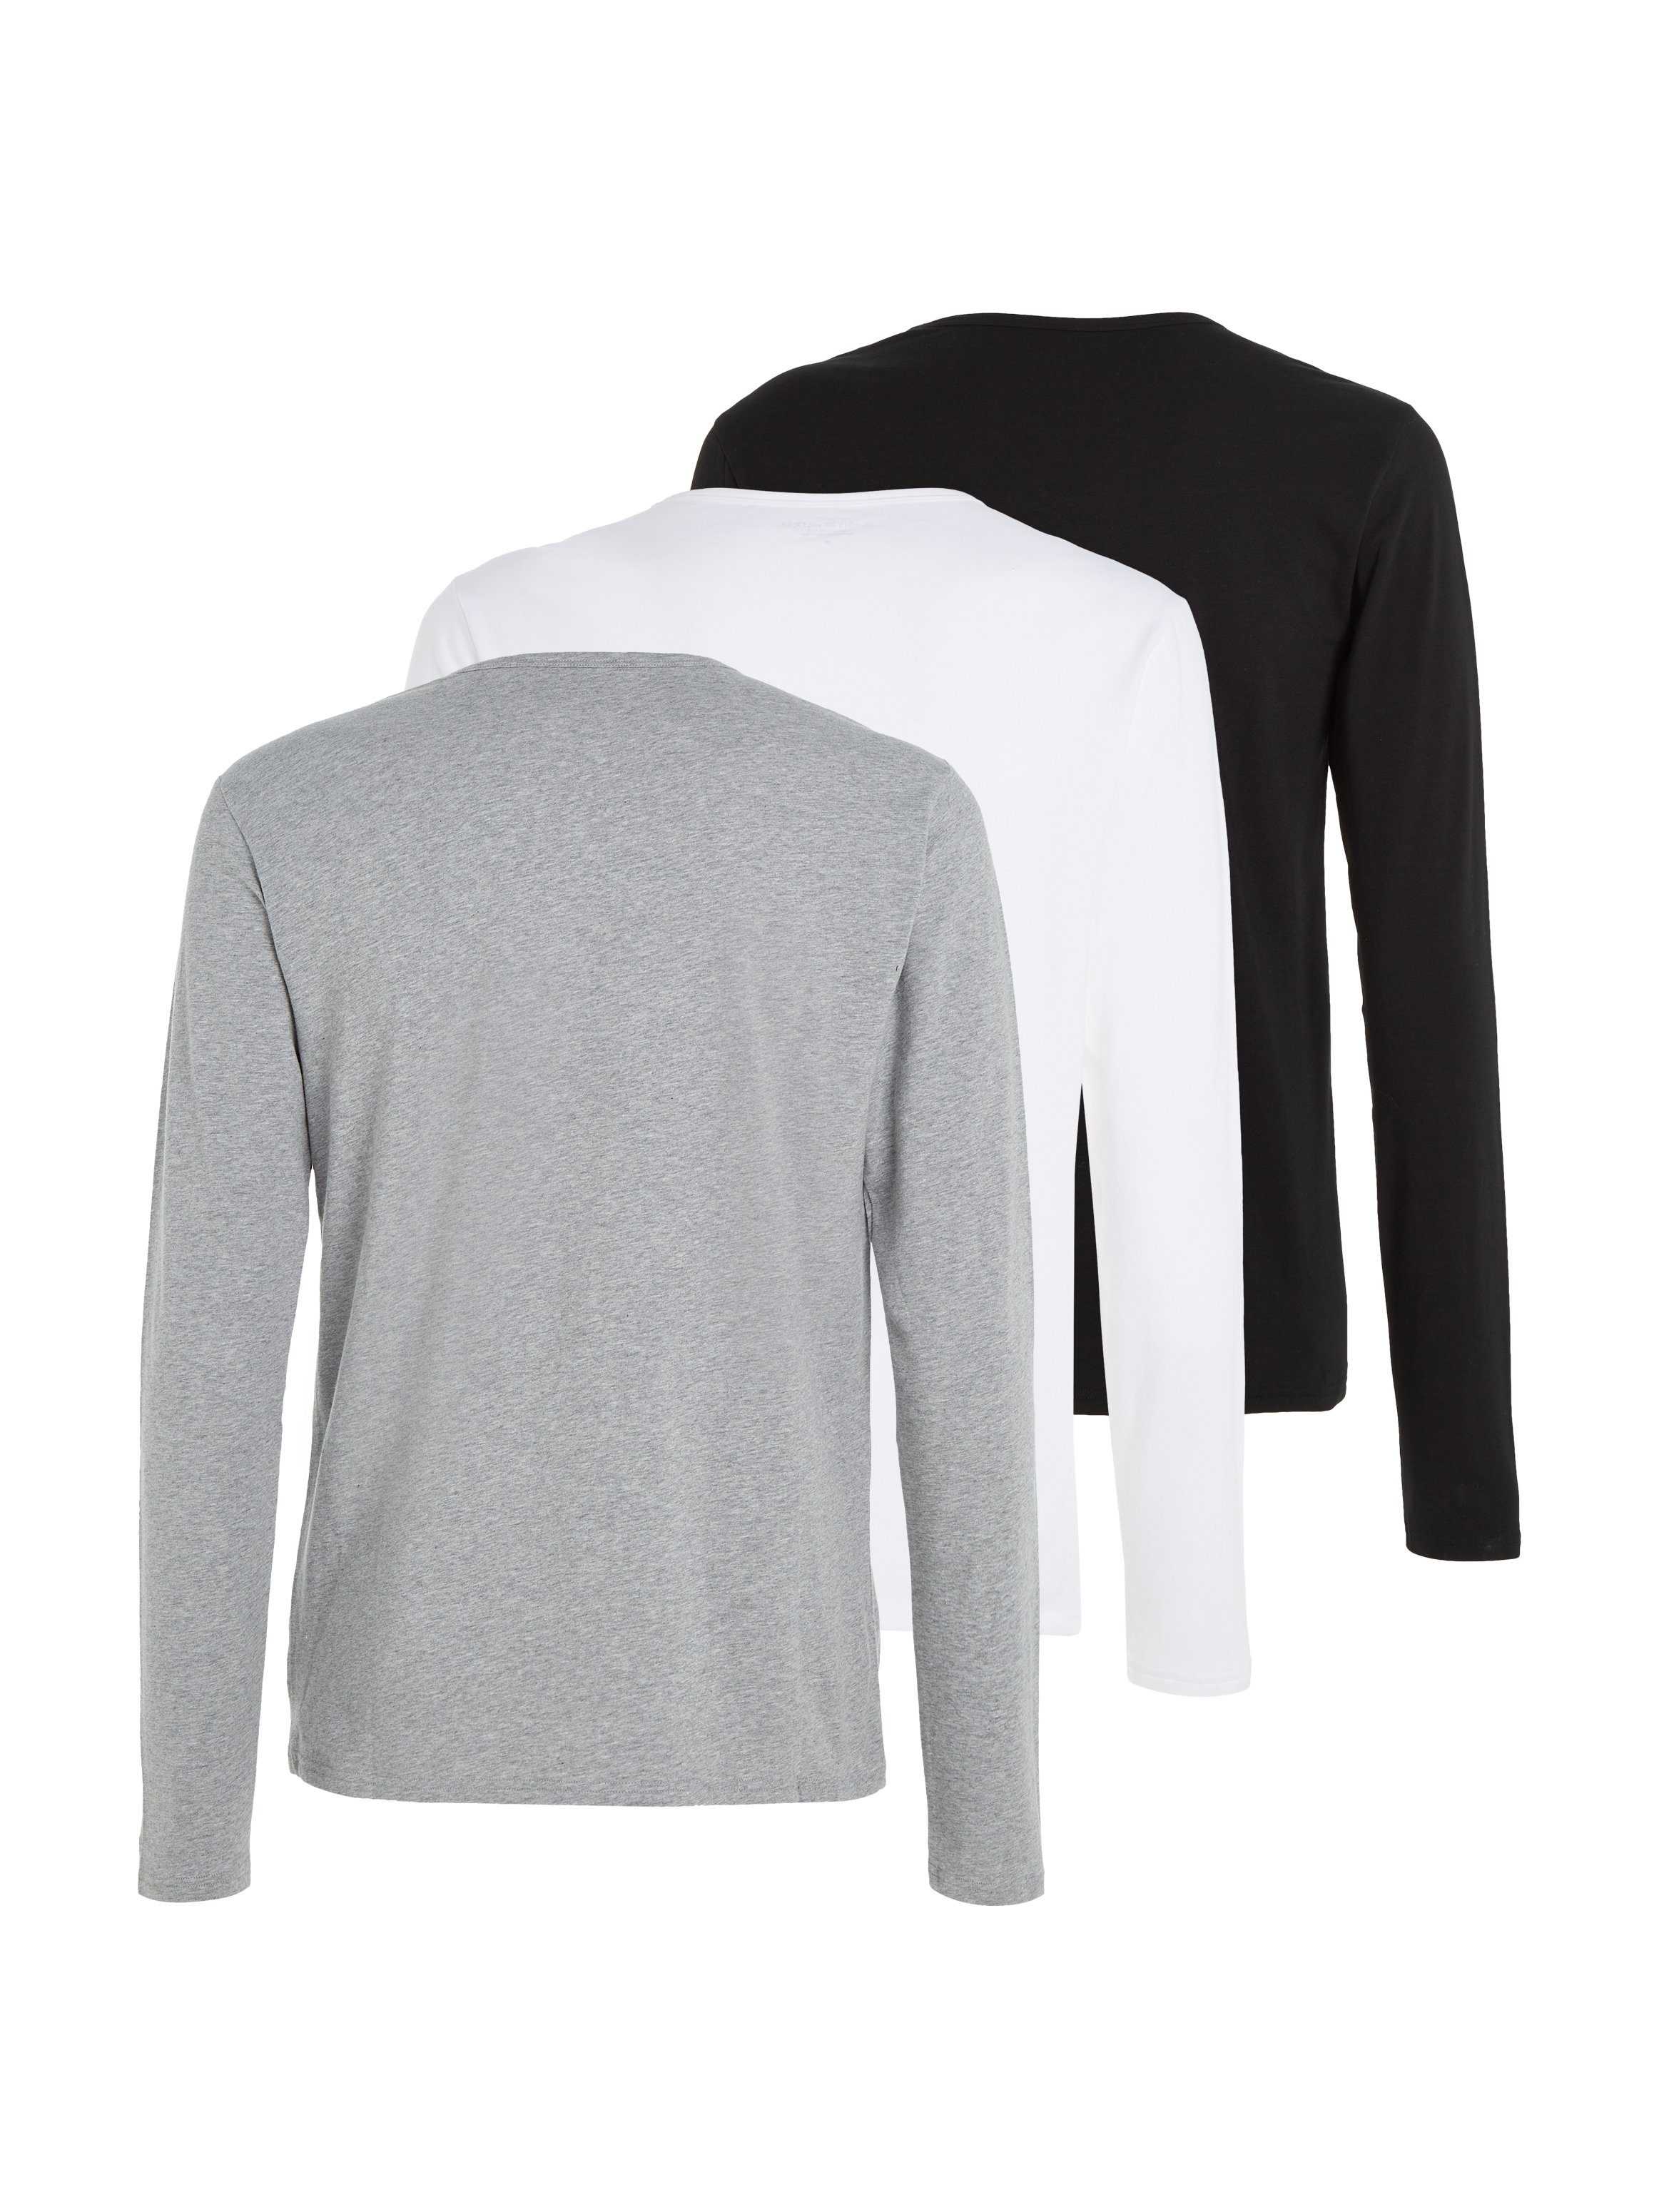 LS Hilfiger mit Tommy T-Shirt Underwear 3P Black/White/Grey 3er-Pack) Tee (Packung, Markenlabel Heather